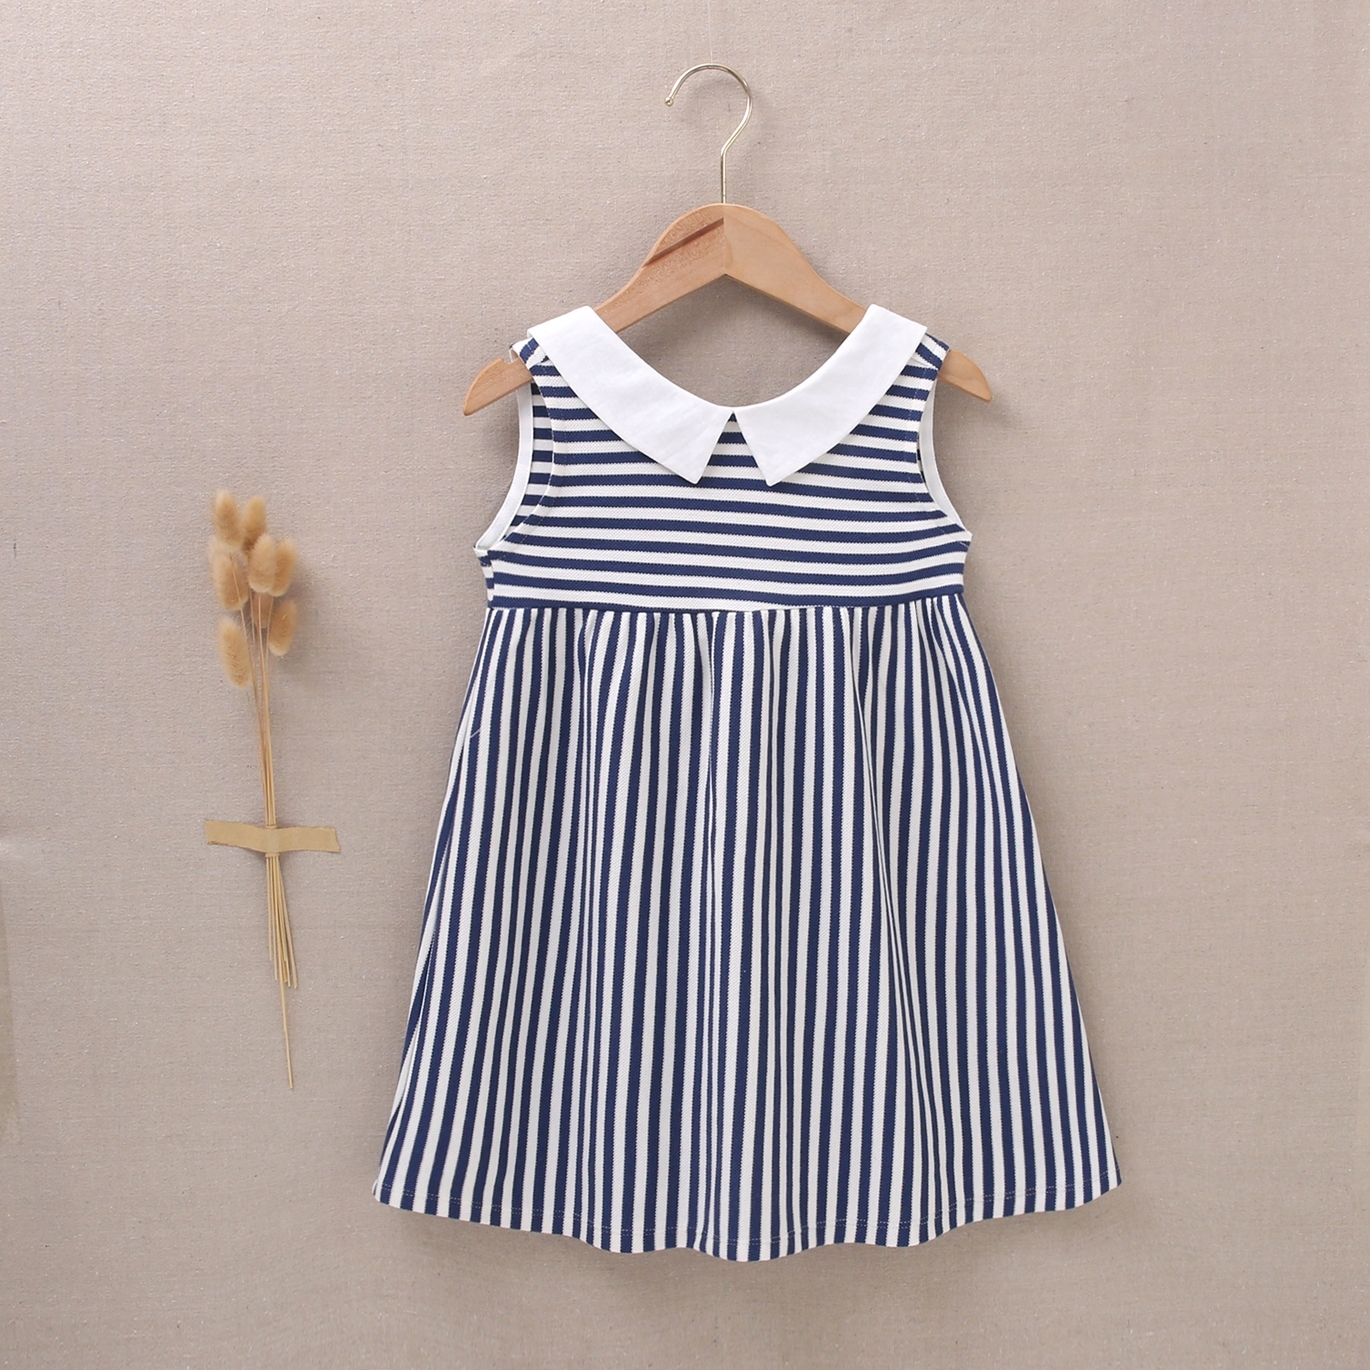 Imagen de Vestido de niña marino en rayas blancas y azul marino